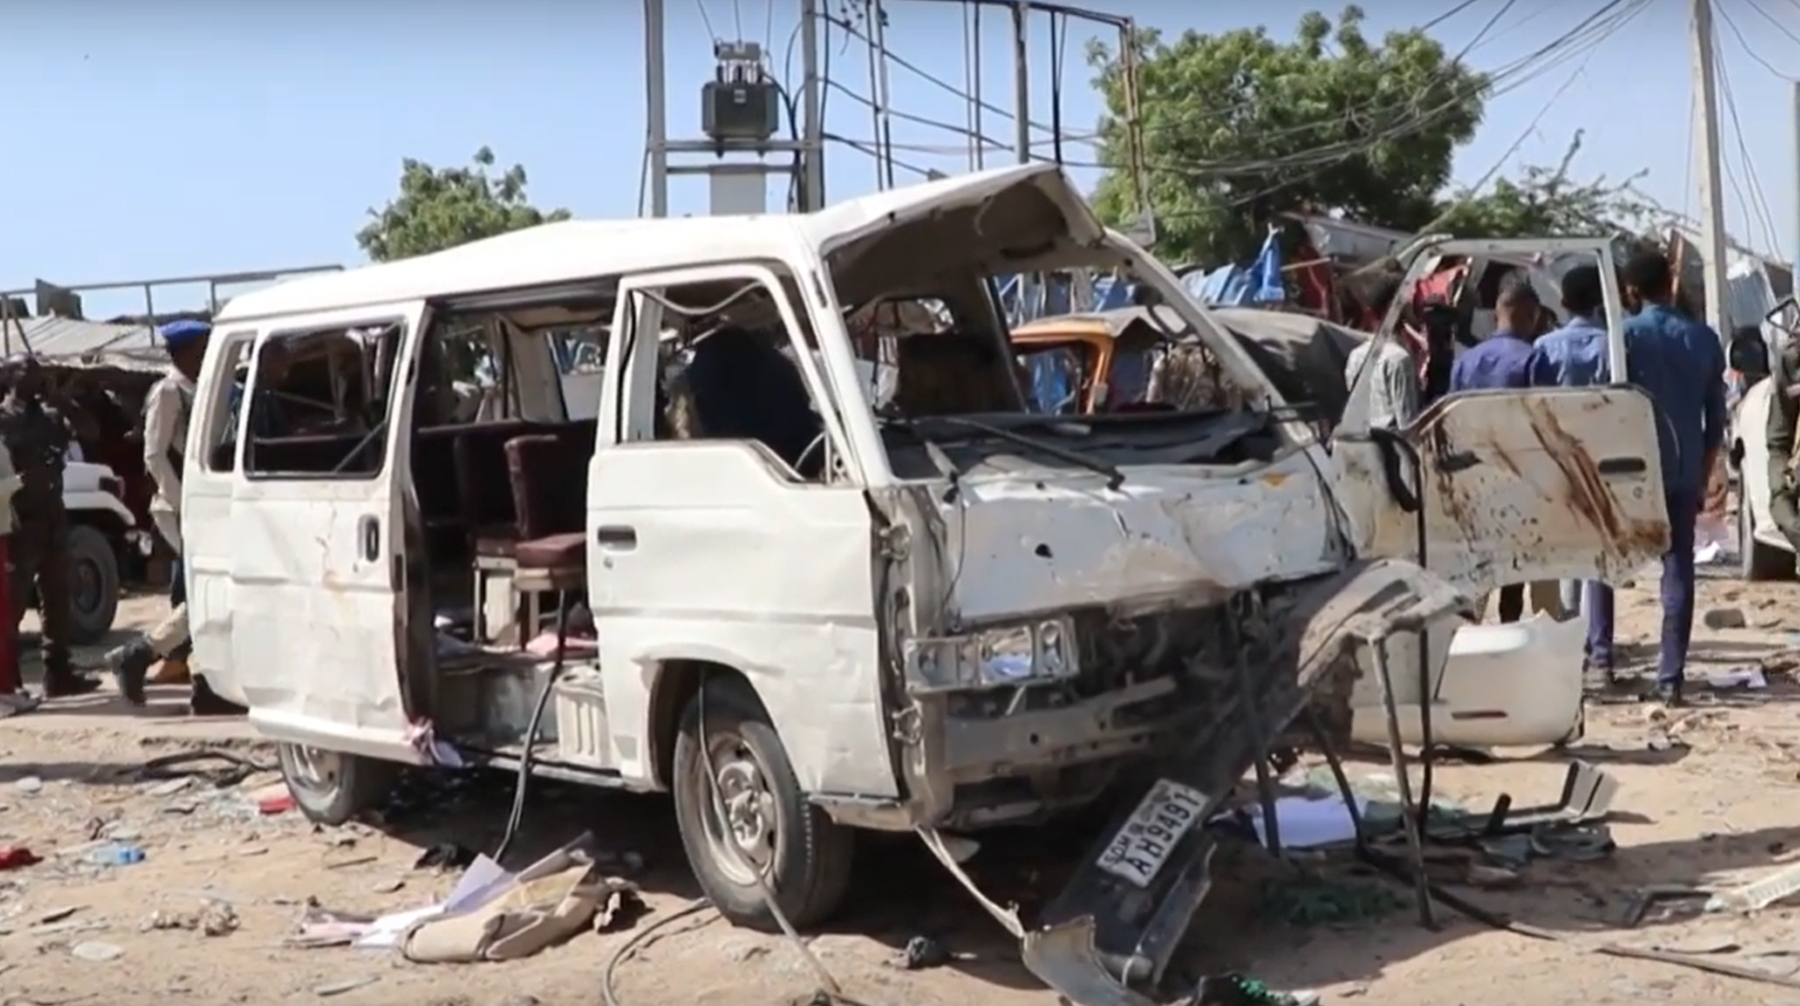 Заминированный автомобиль взорвался в столице страны Кадр с места происшествия